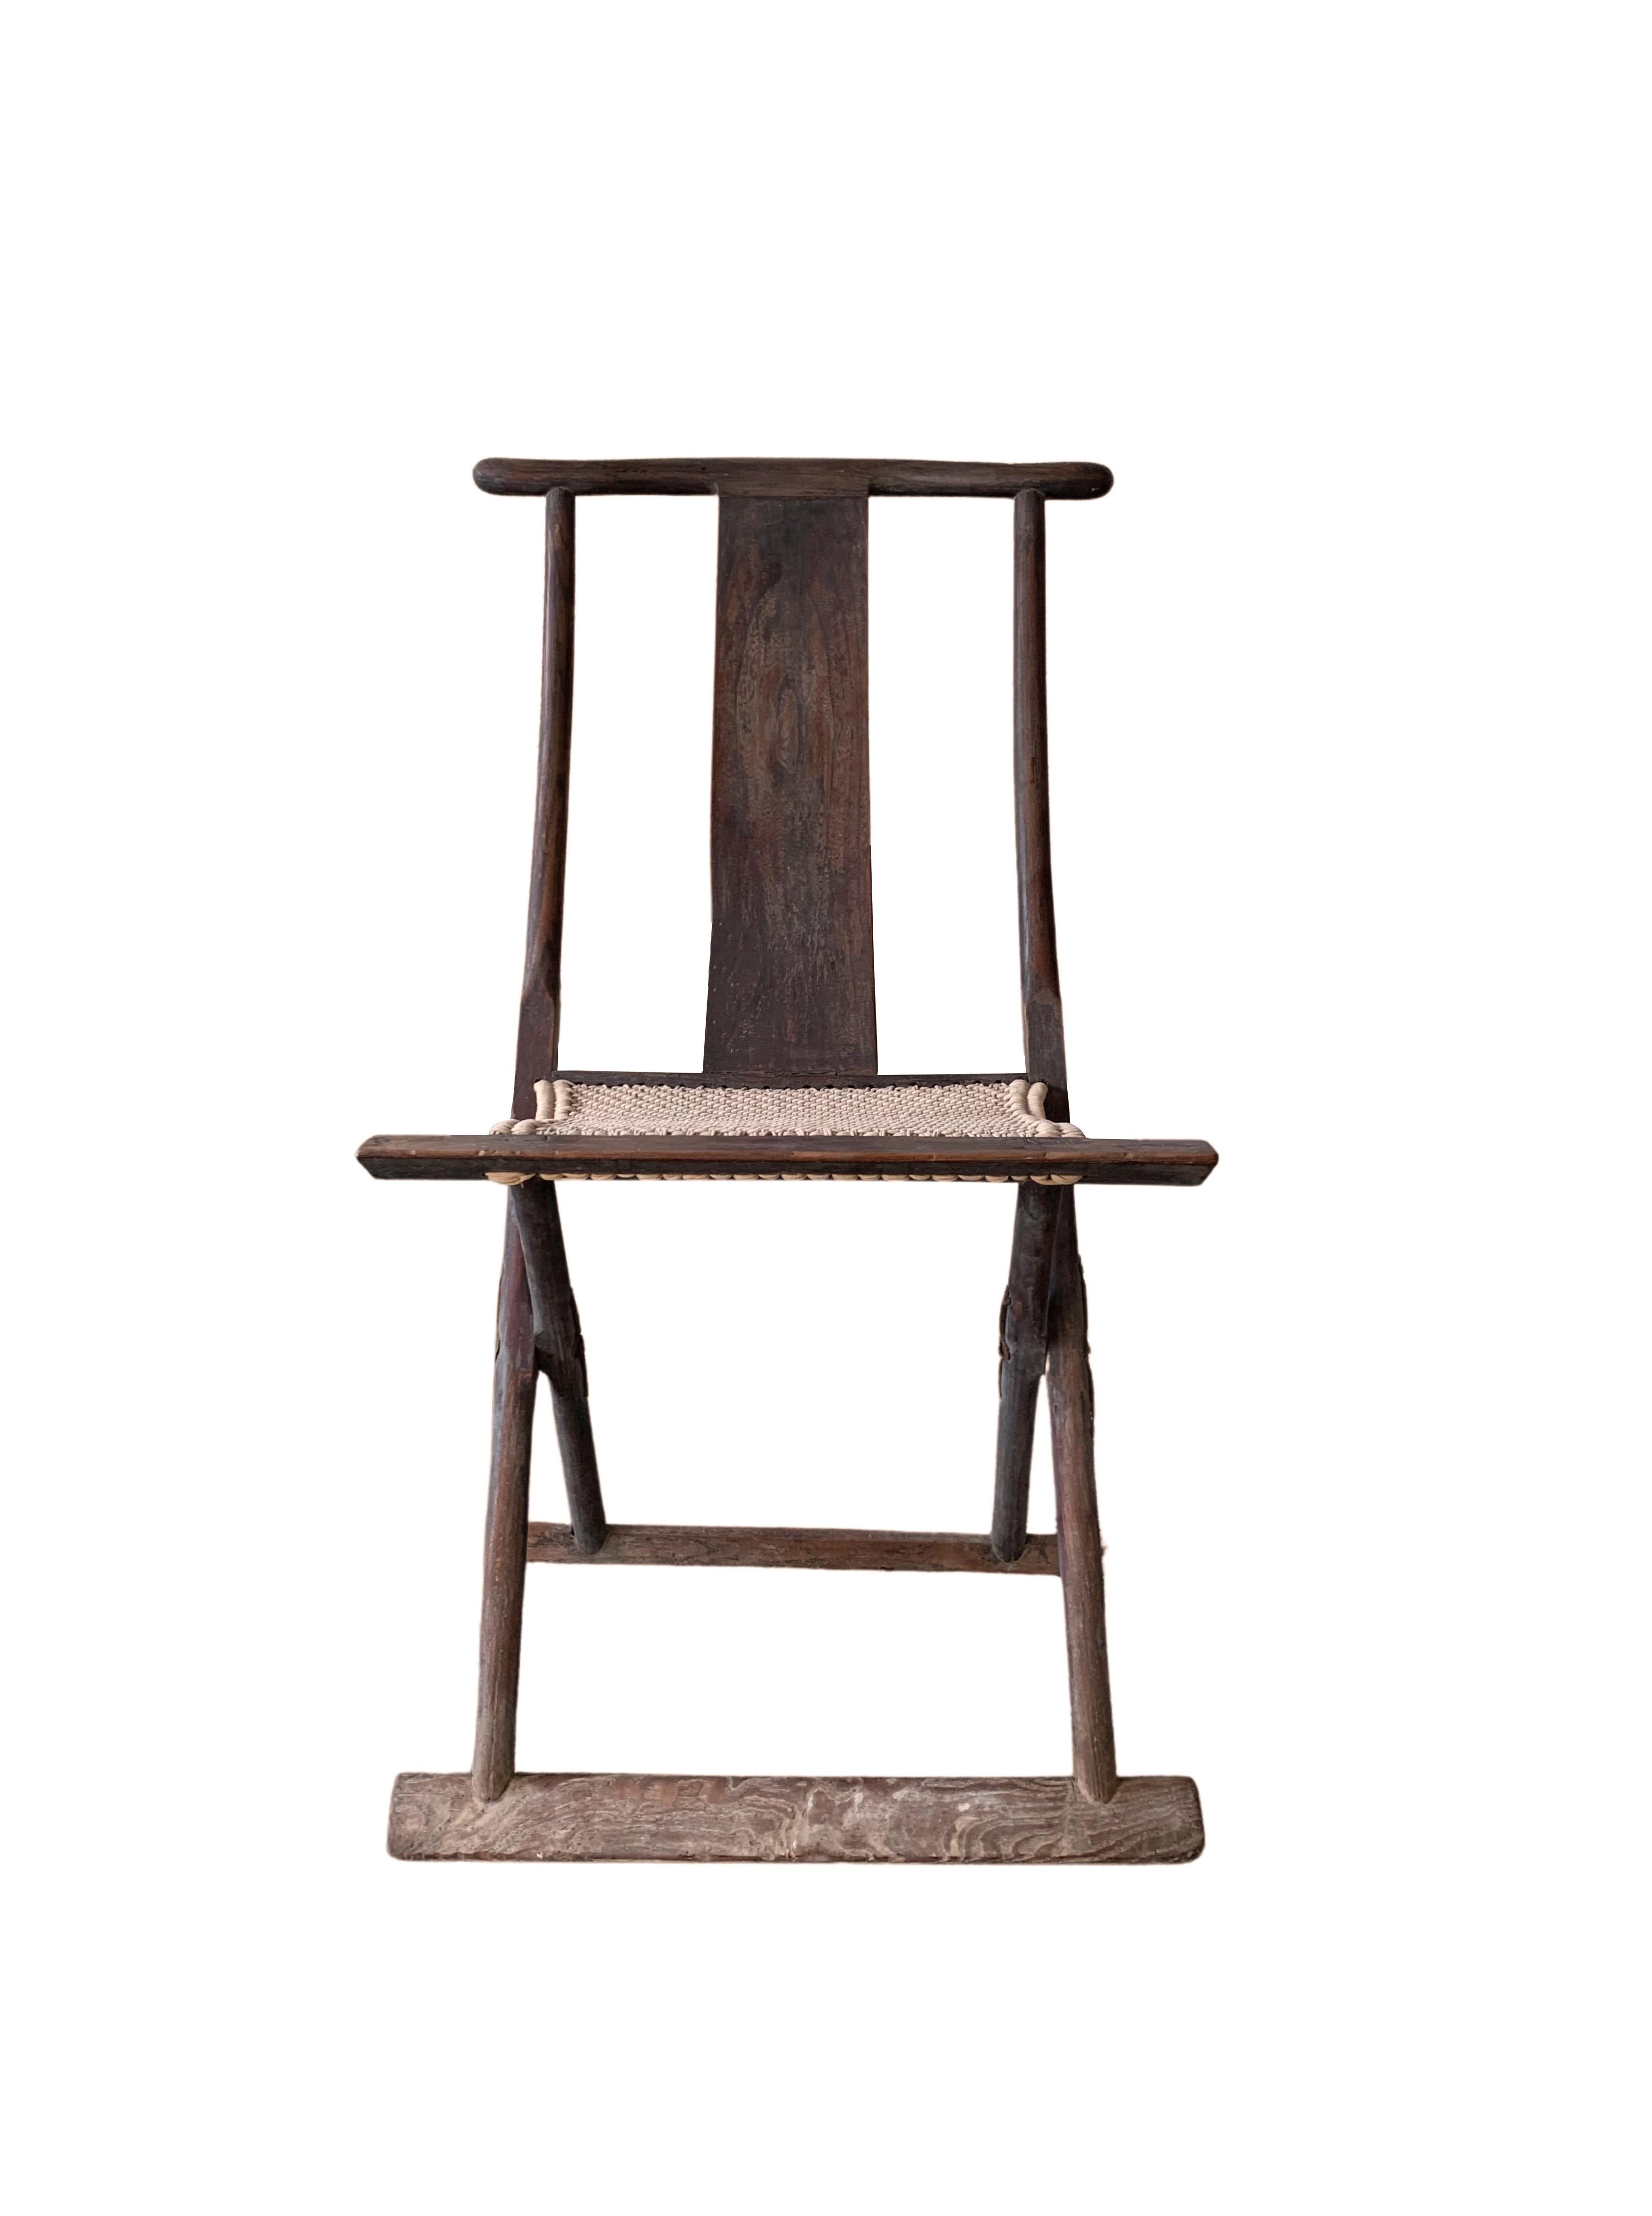 Dieser Klappstuhl aus dem frühen 20. Jahrhundert wurde einst von chinesischen Reisenden benutzt. Die Sitzfläche ist aus gewebtem Stoff gefertigt, der zusammen mit der Rückenlehne für einen bequemen Stuhl sorgt. Sein elegantes, schlankes und